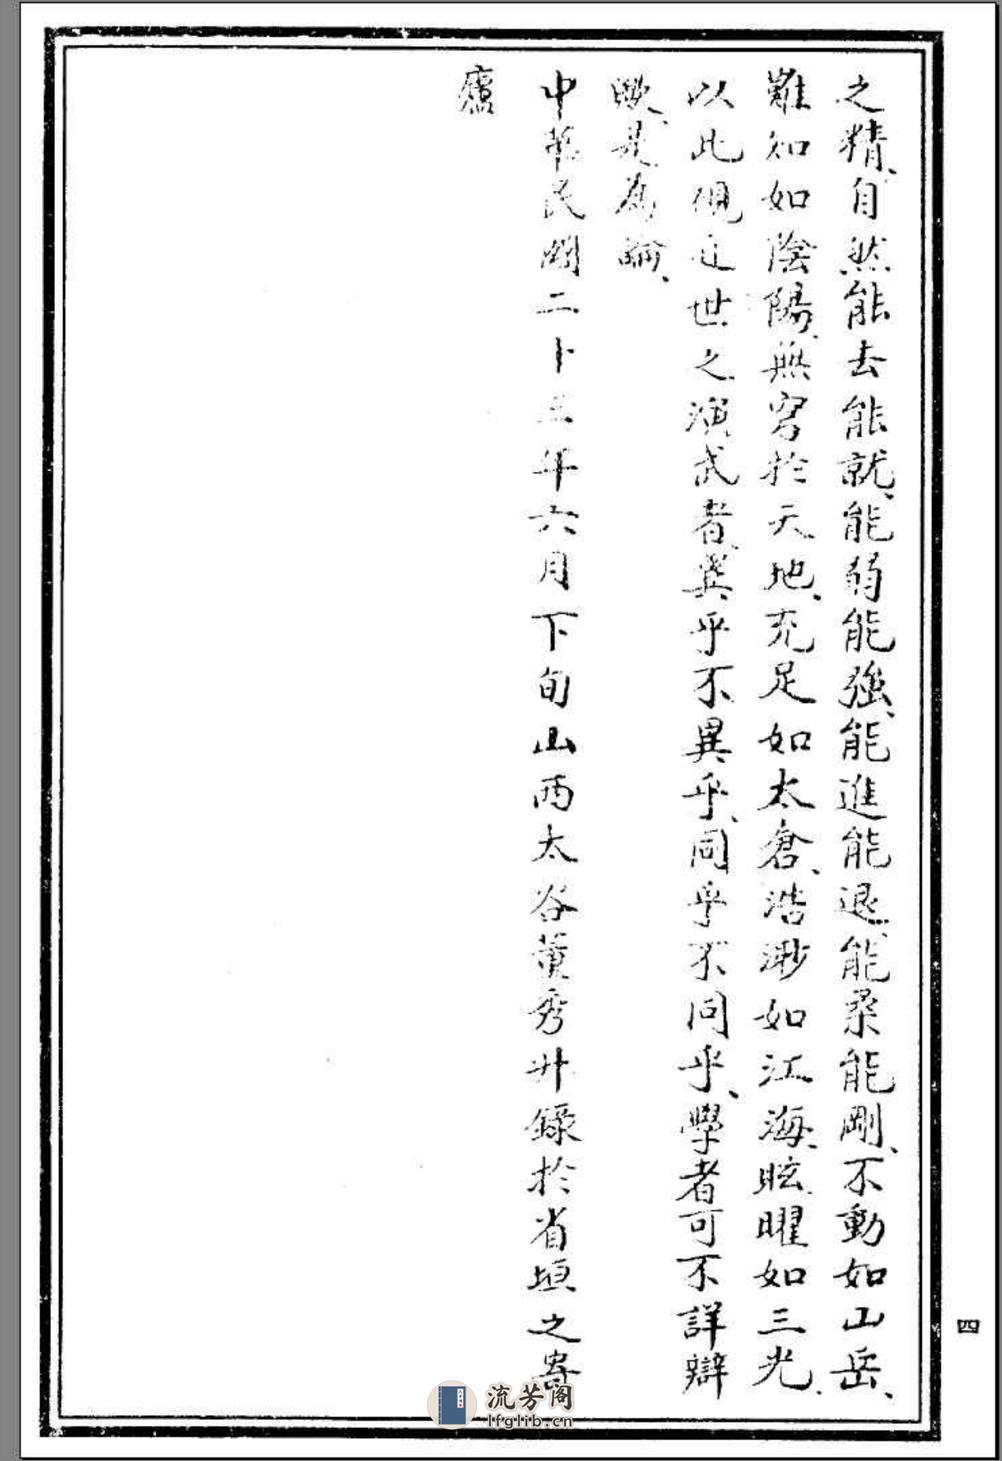 《岳氏意拳十二形精义》李存义、董秀升 - 第9页预览图